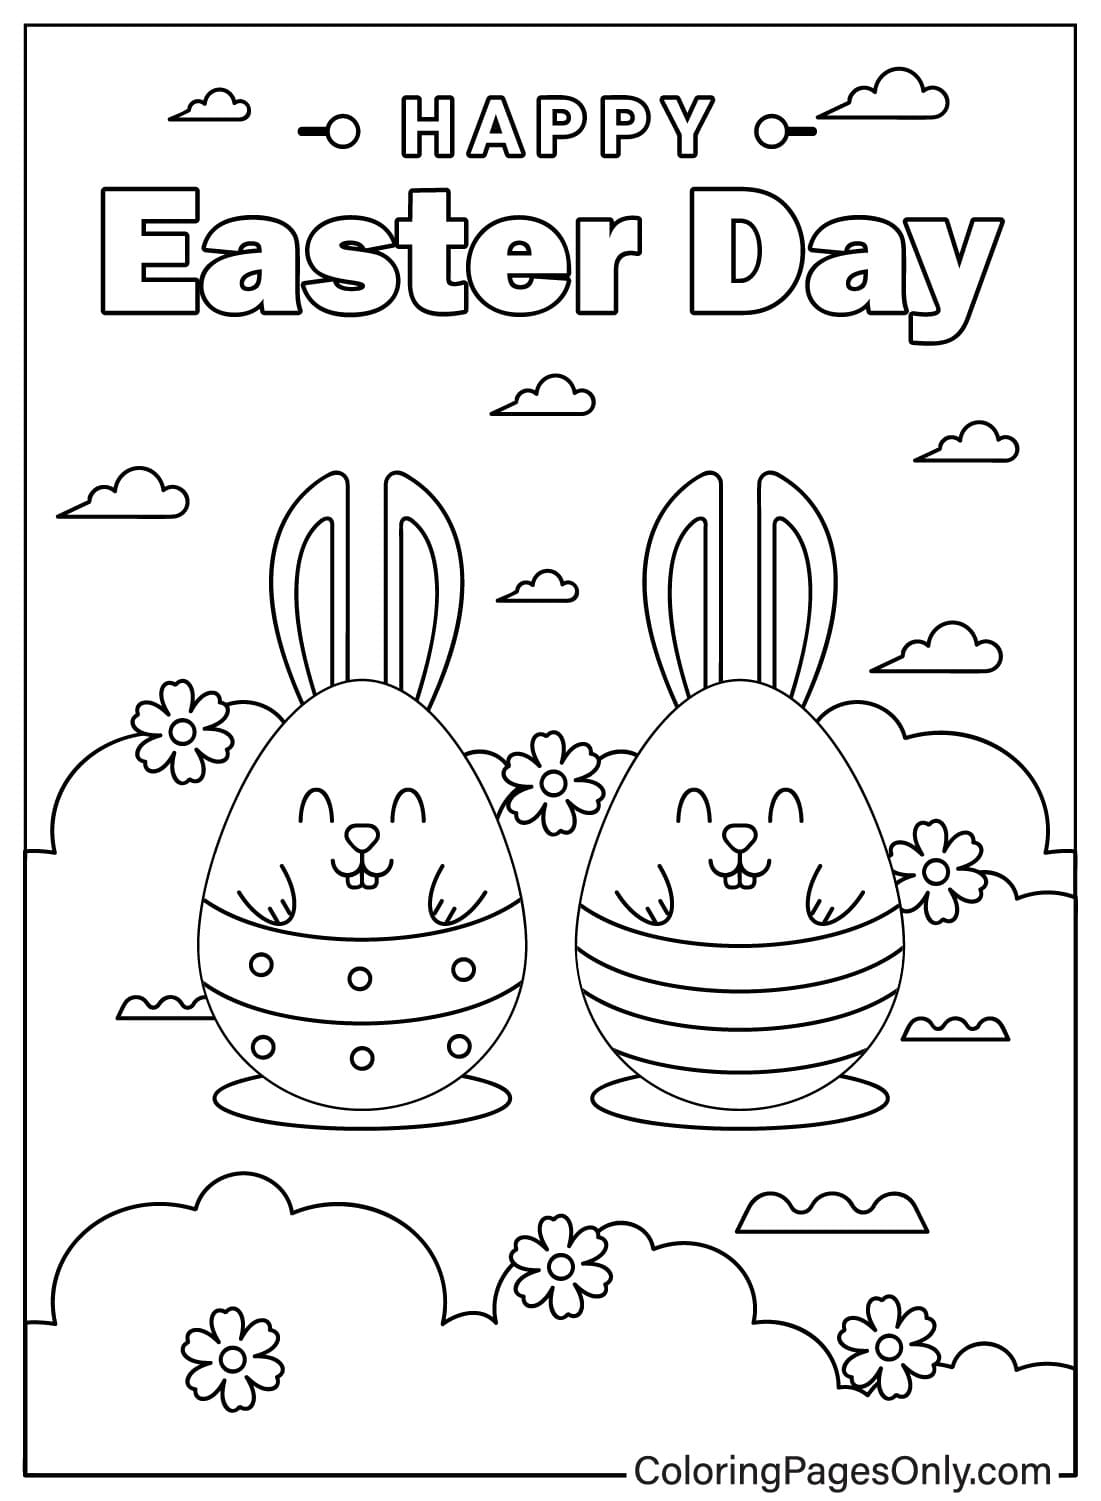 Página para colorear de Tarjeta de Pascua para imprimir gratis de Tarjeta de Pascua